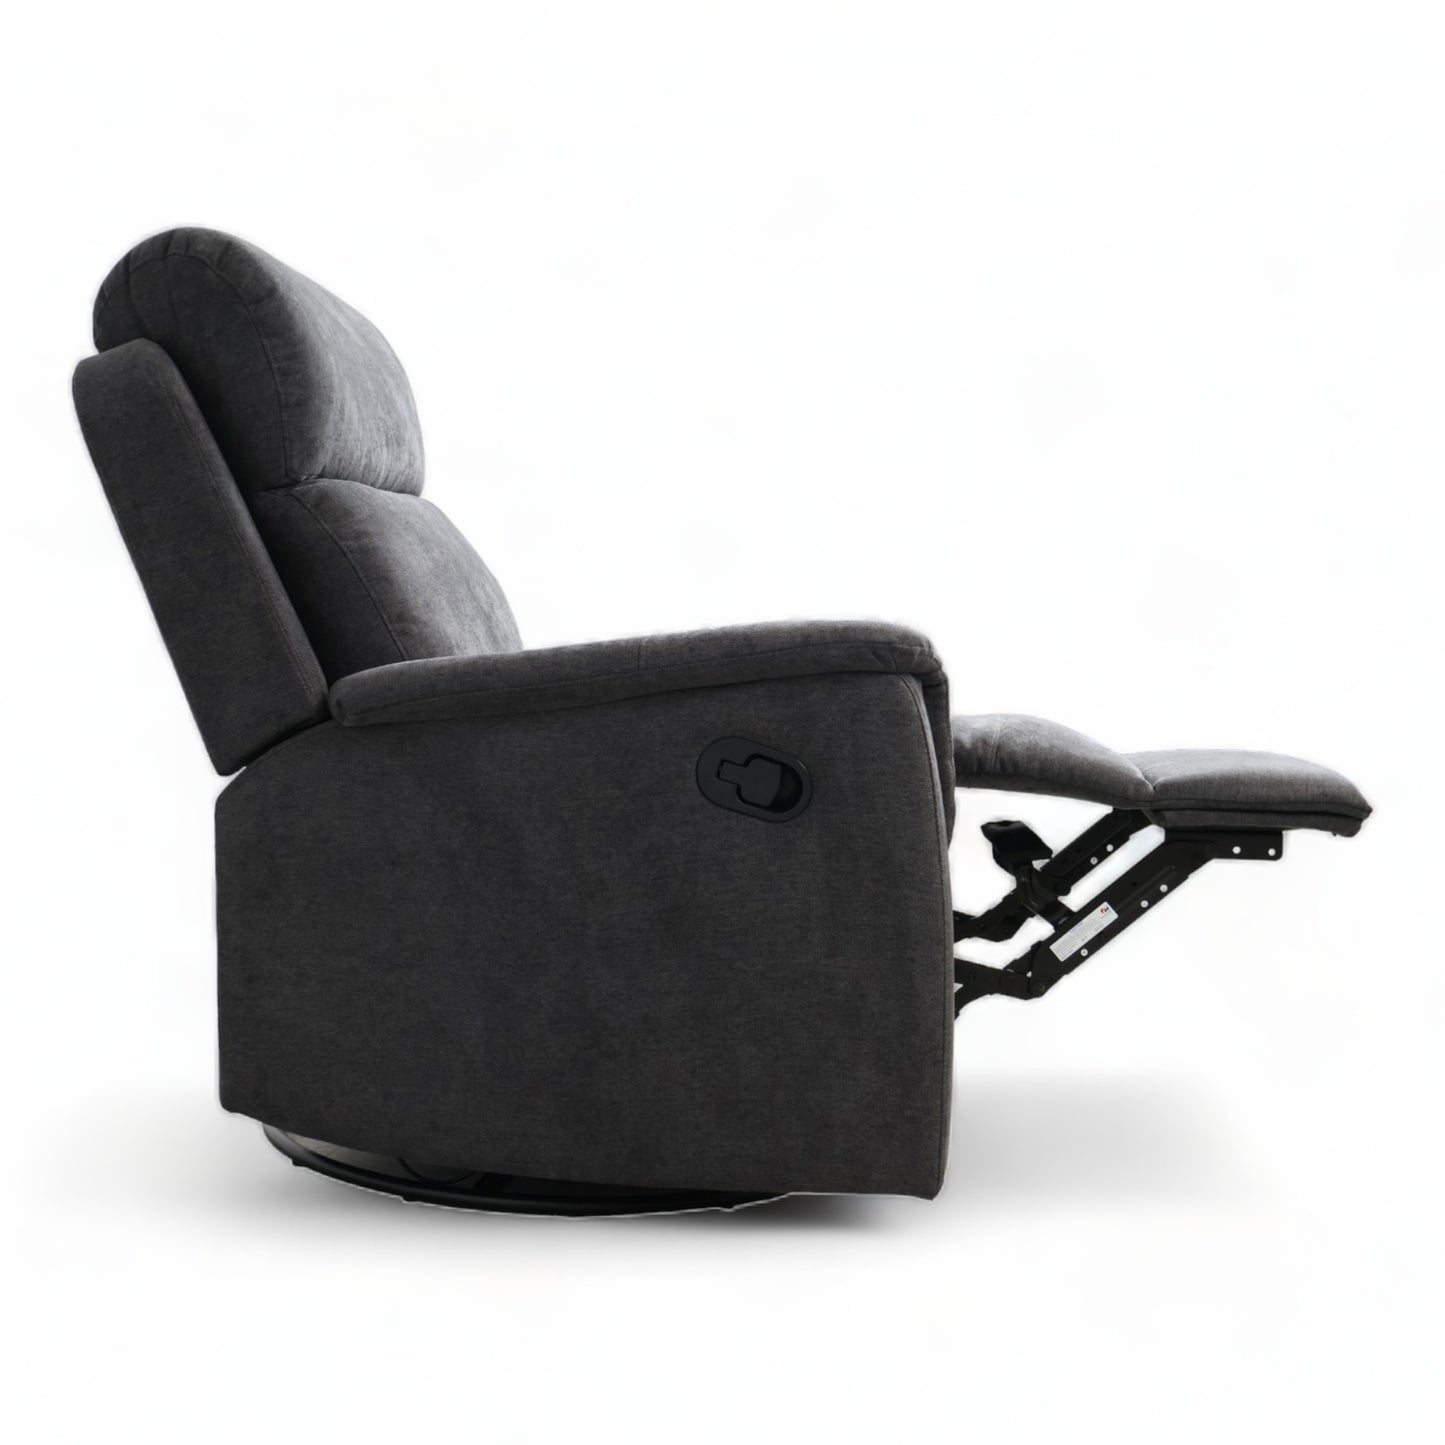 Nyrenset | Grå recliner fra A-Møbler